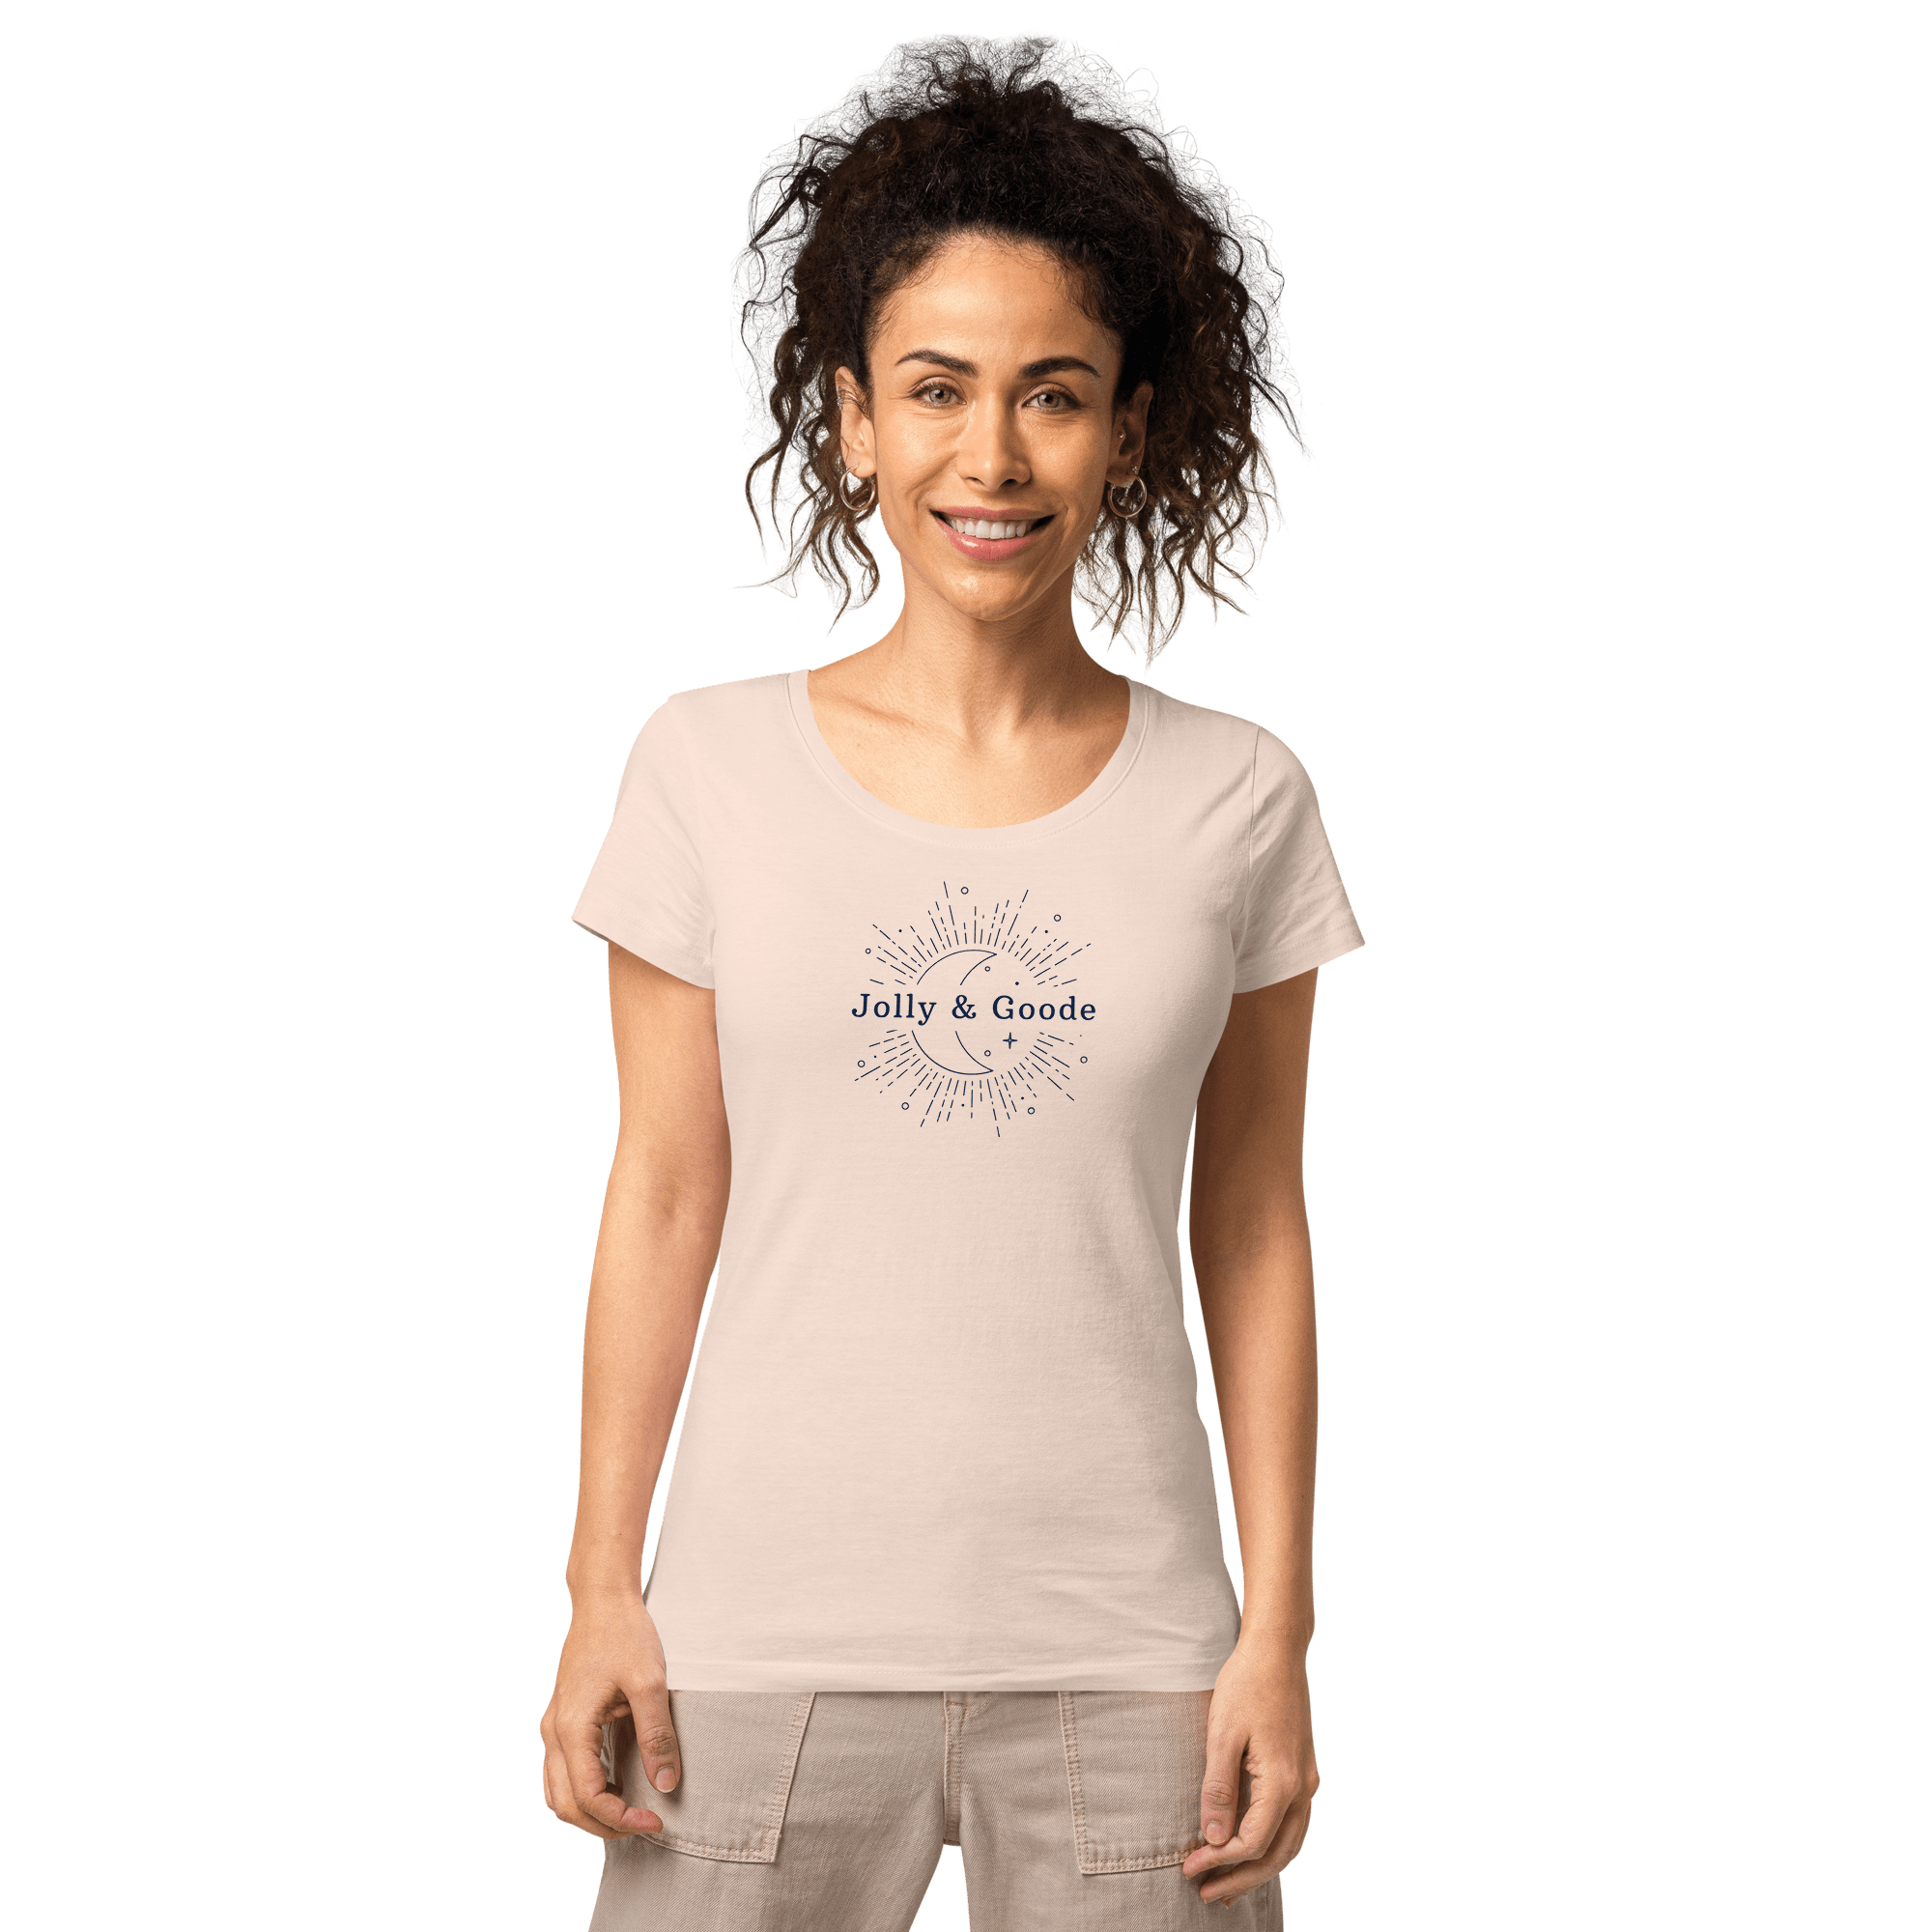 Jolly & Goode | Women’s Organic T-shirt Creamy pink / S Shirts & Tops Jolly & Goode